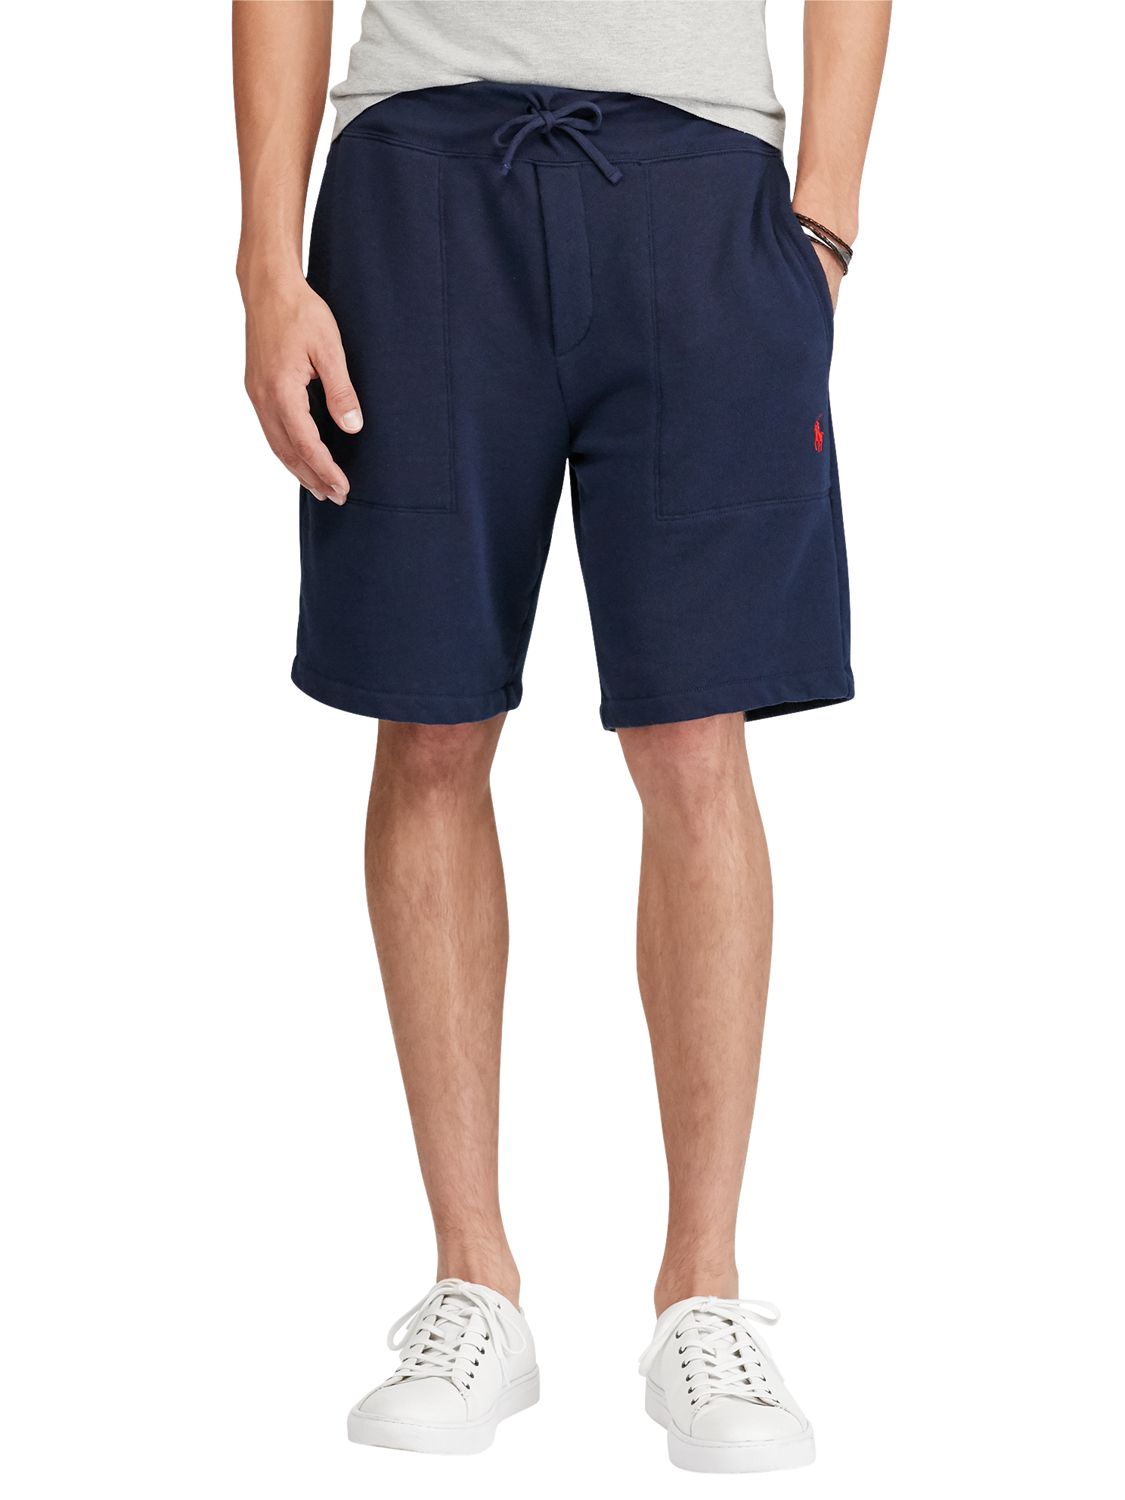 polo ralph lauren jersey shorts